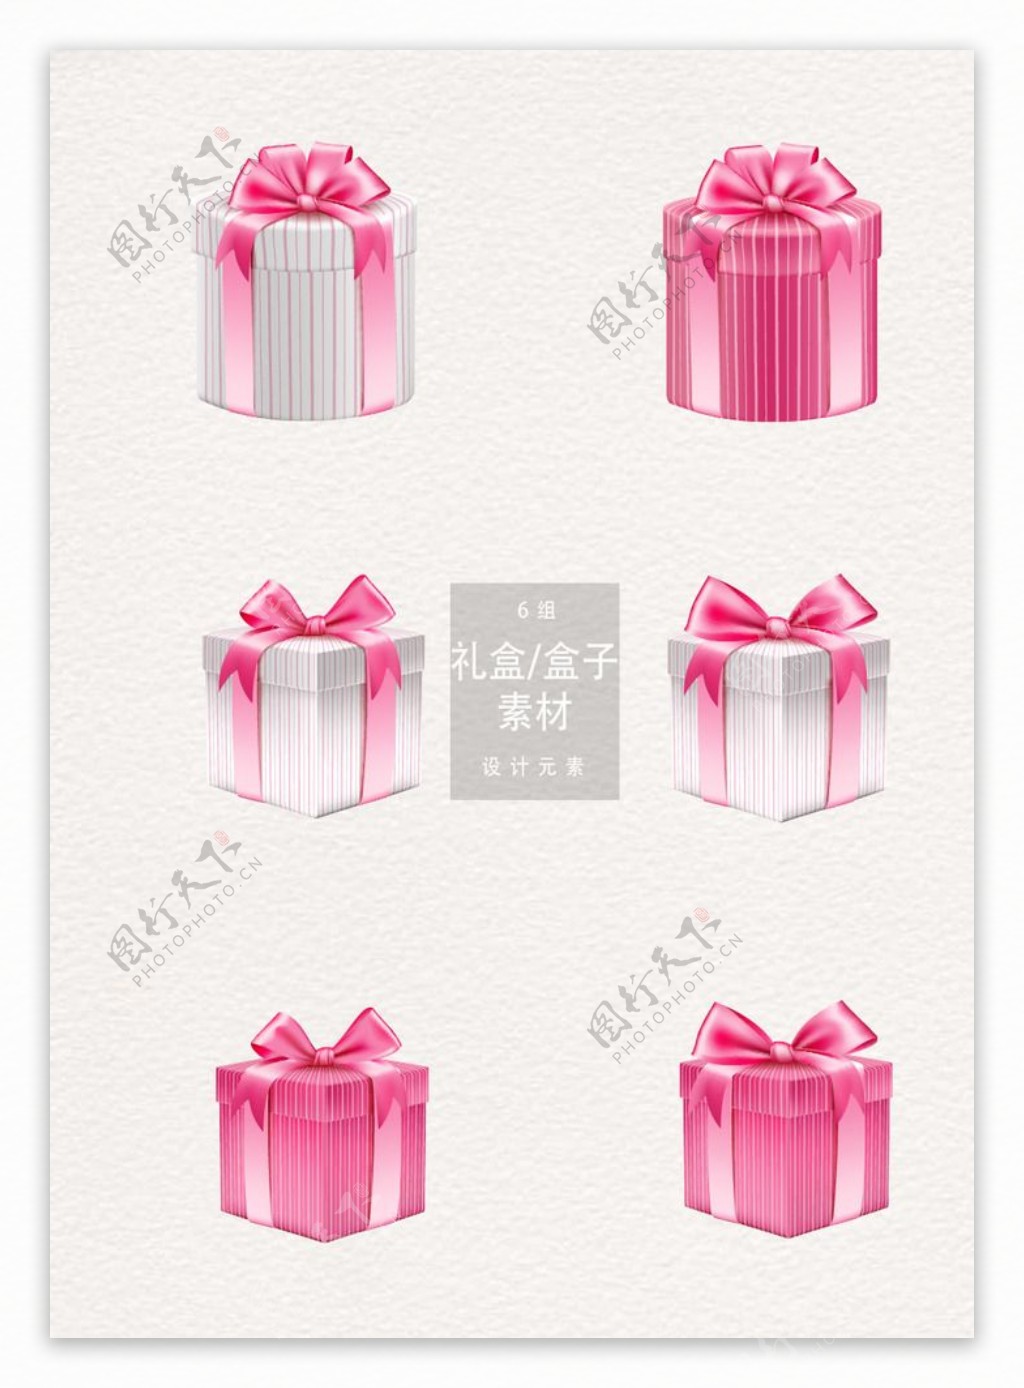 礼盒素材粉色卡通写实盒子ai矢